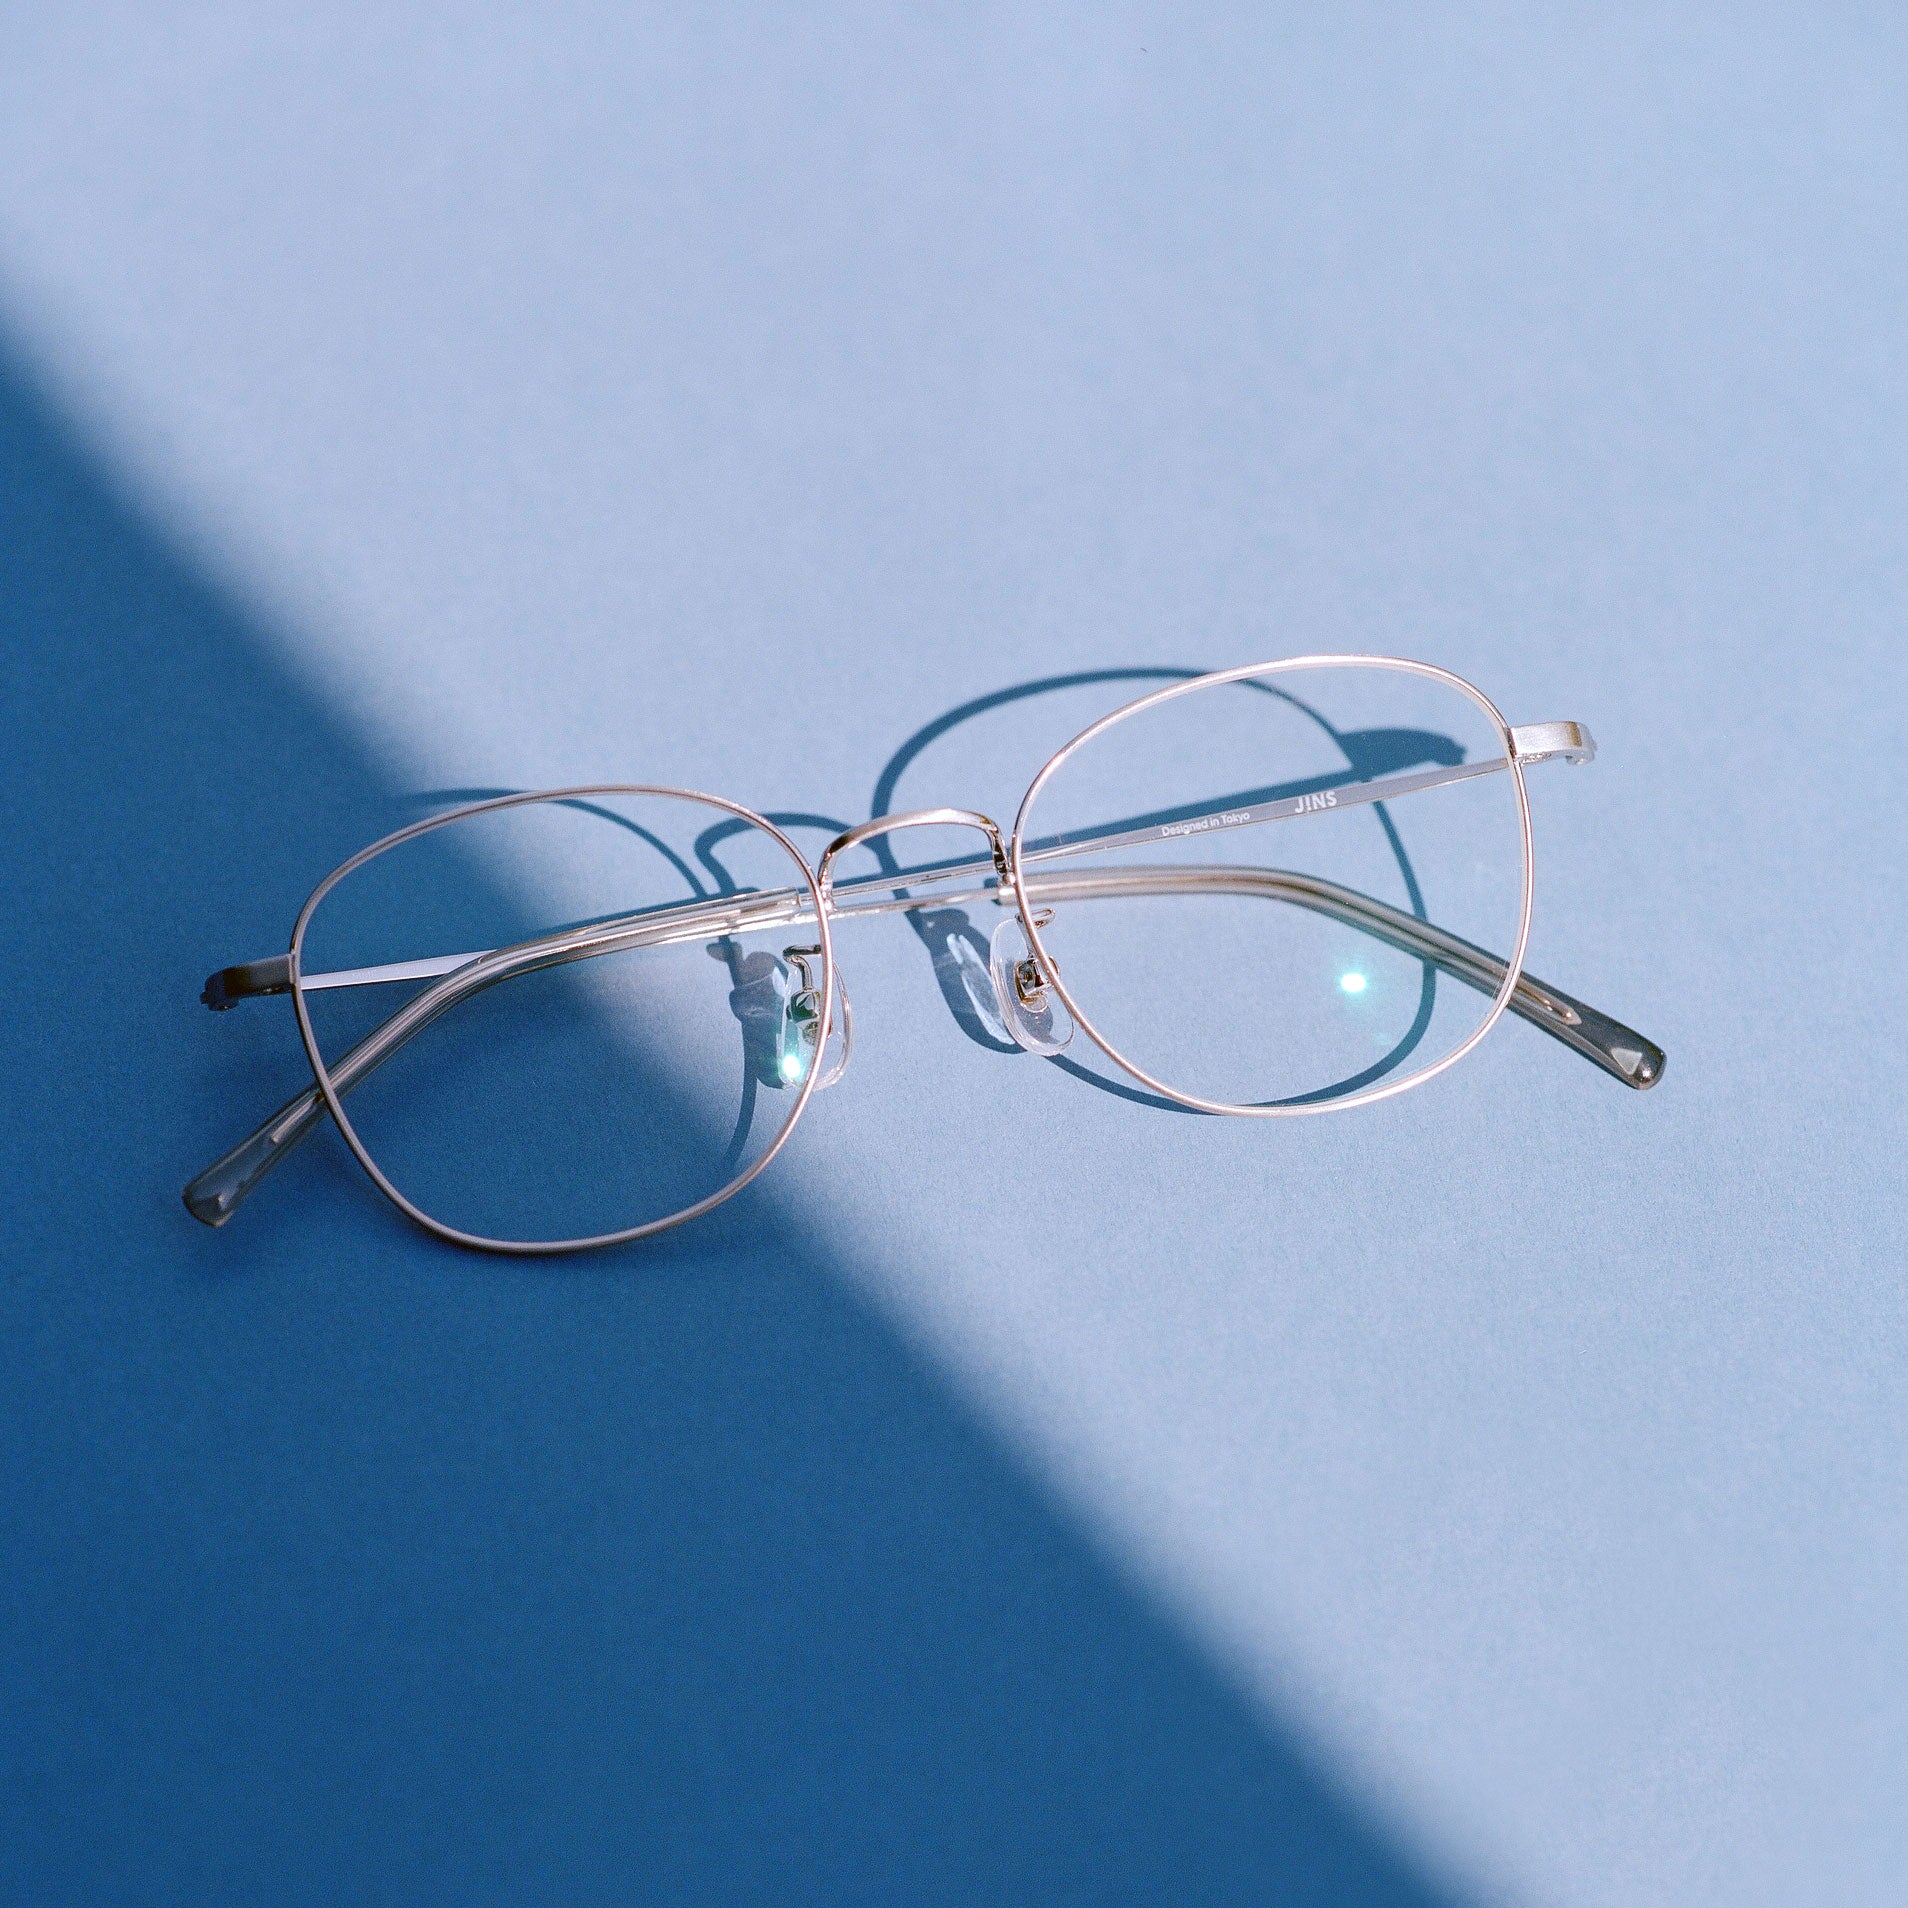 Lens Buff Eyeglass Scratch Remover, 1 - Harris Teeter